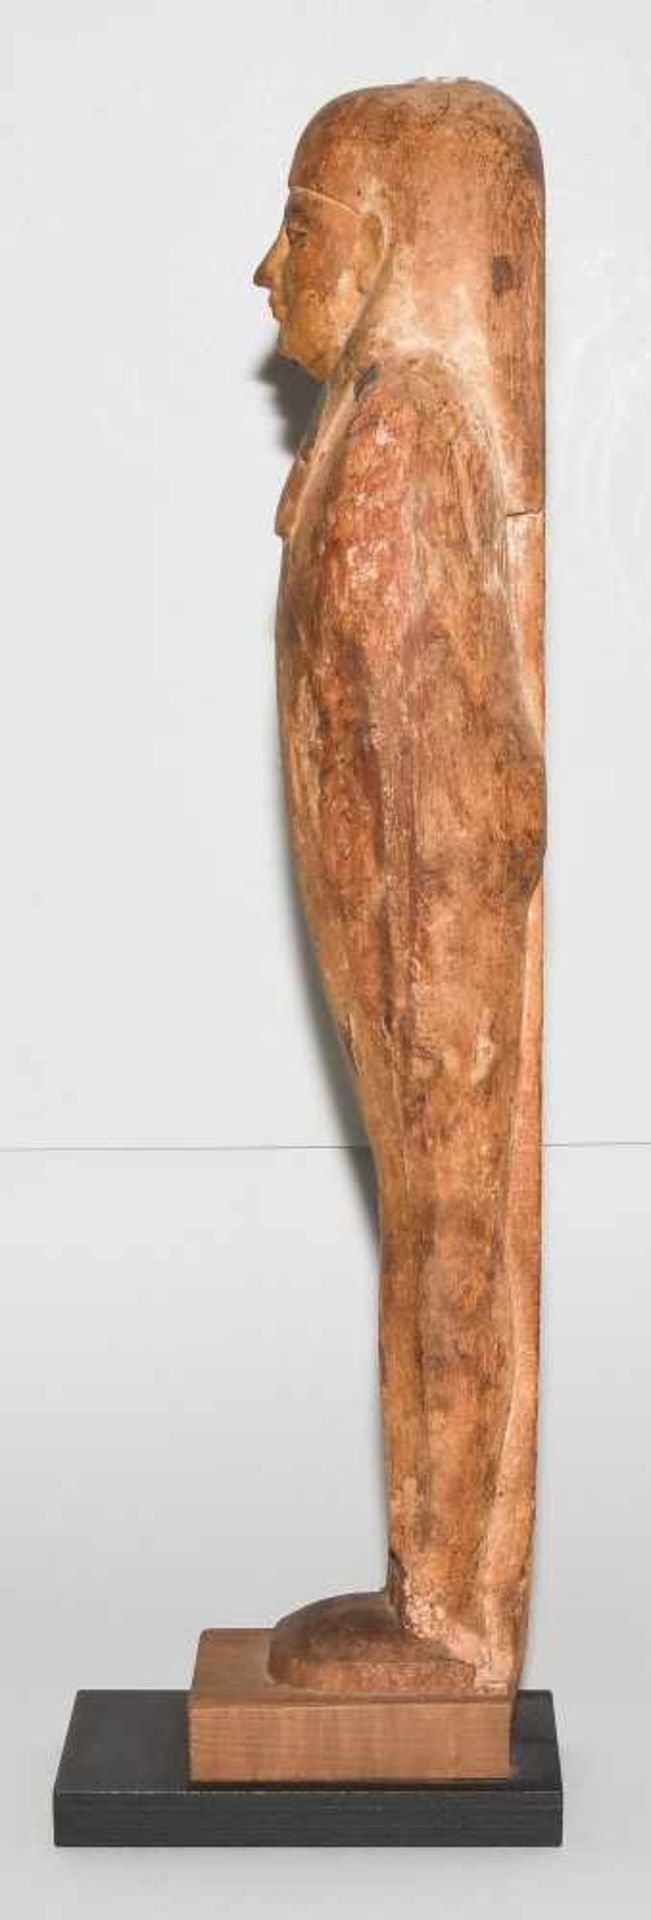 Ptah-Sokar-OsirisAegypten, Spätzeit, ca. 350 v.C. Holz mit Resten von Bemalung und Vergoldung. - Bild 3 aus 10